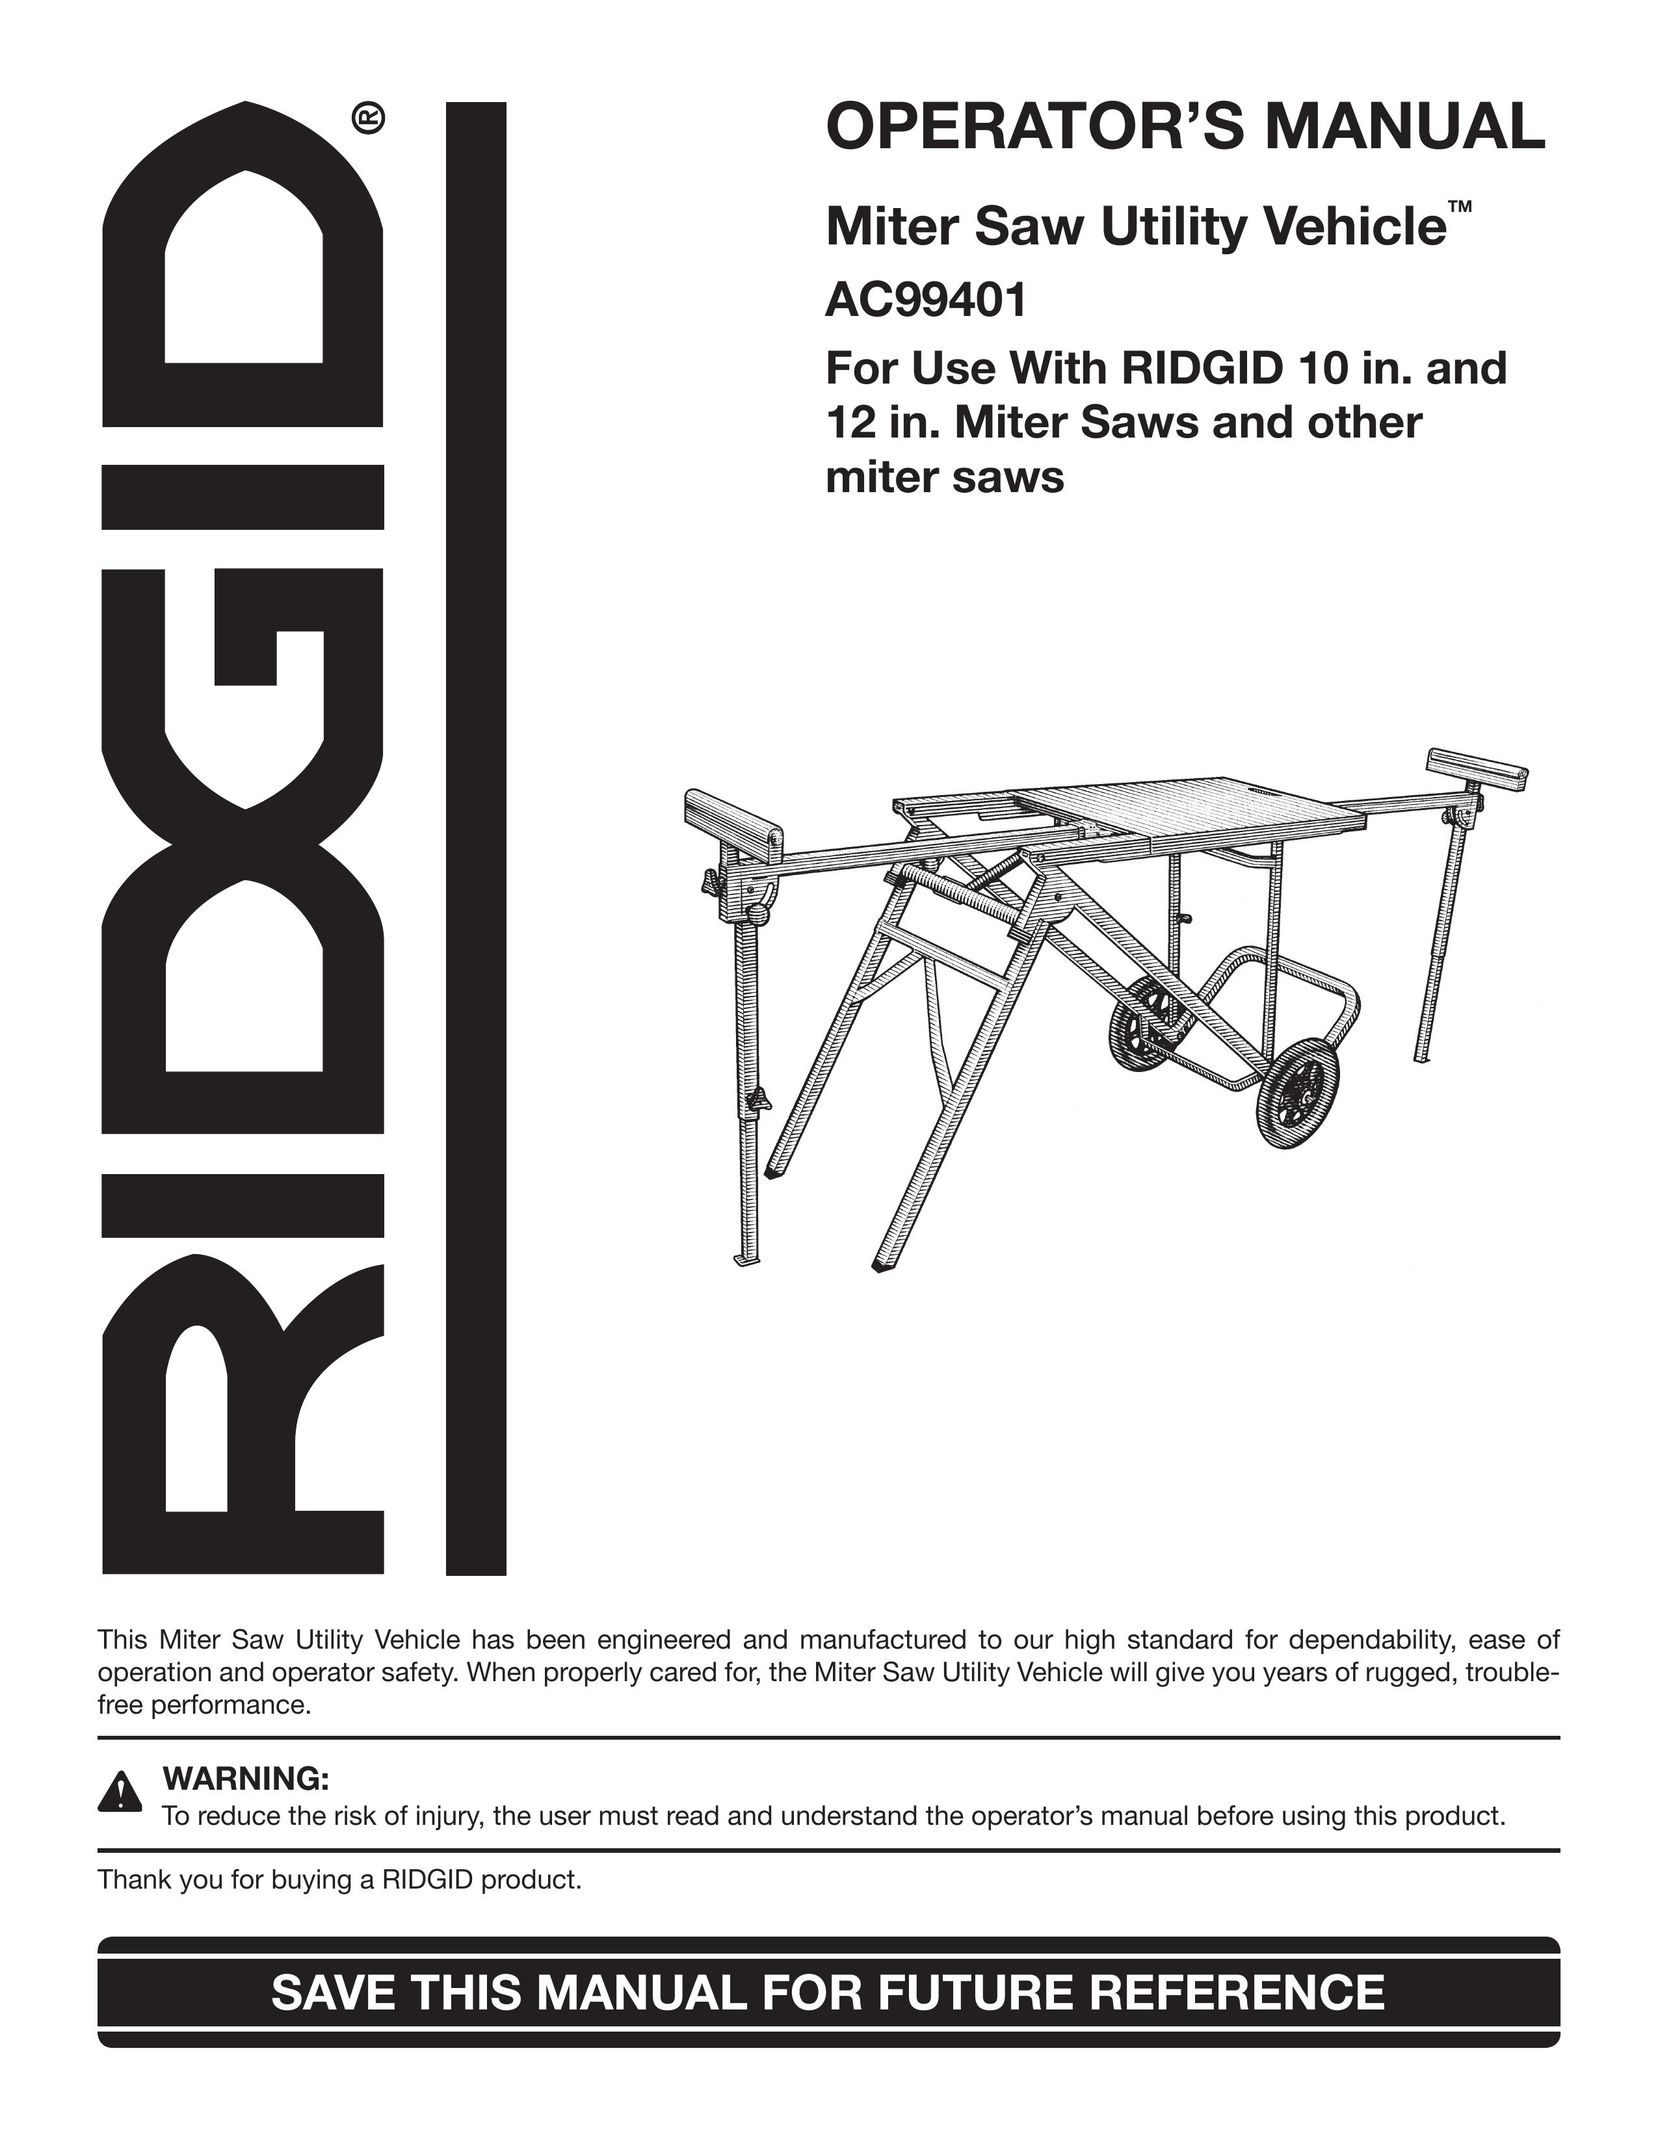 RIDGID AC99401 Saw User Manual